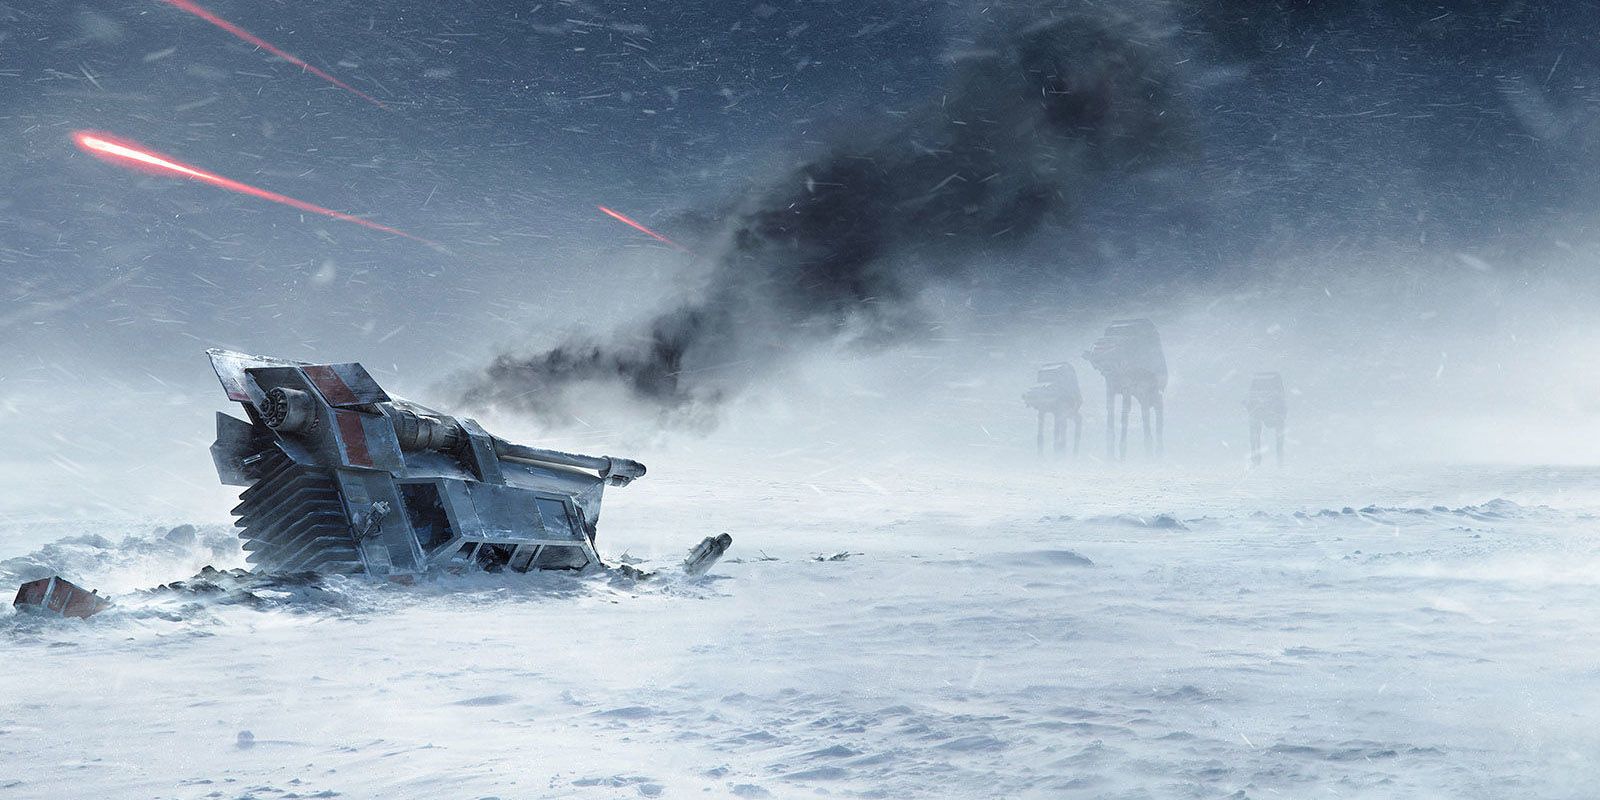 Star Wars: Battlefront - Crashed Snowspeeder on Hoth